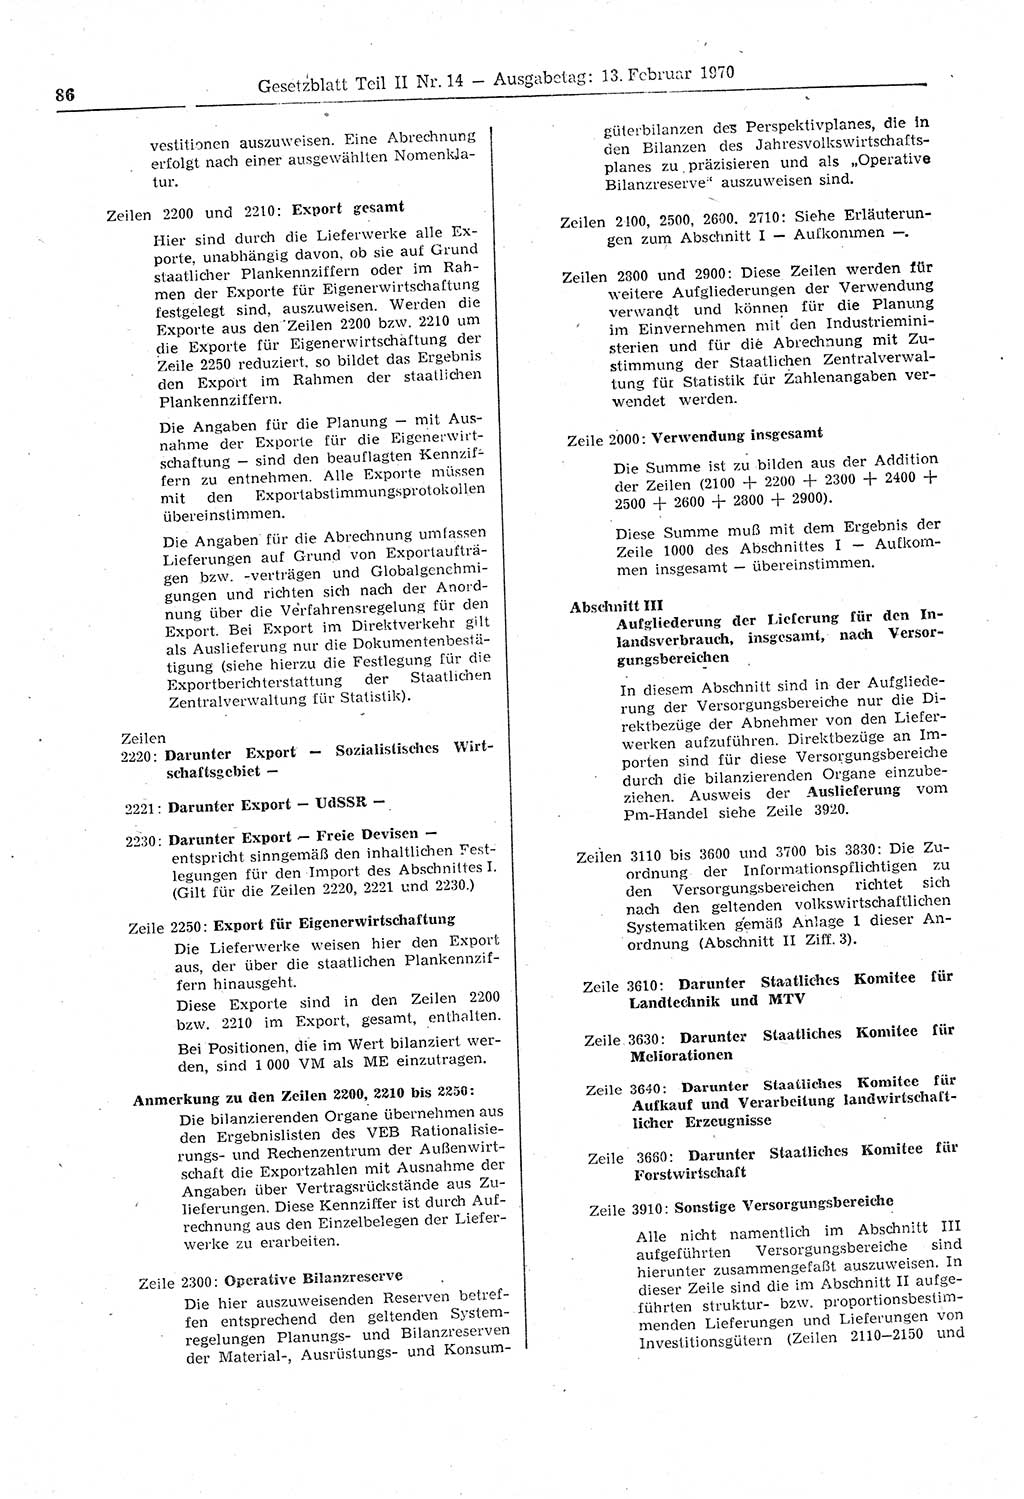 Gesetzblatt (GBl.) der Deutschen Demokratischen Republik (DDR) Teil ⅠⅠ 1970, Seite 86 (GBl. DDR ⅠⅠ 1970, S. 86)